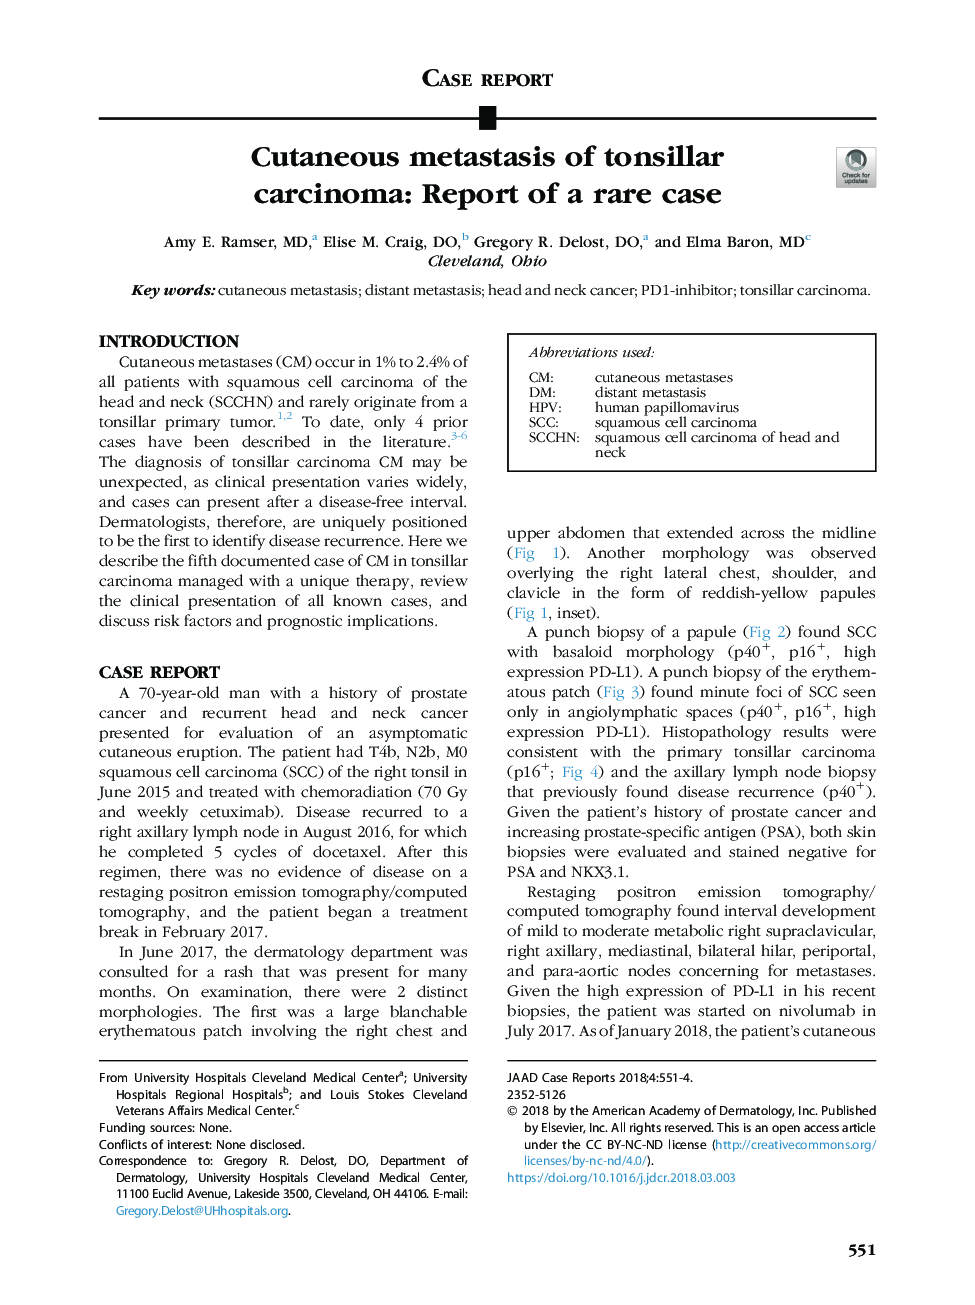 متاستاز پوستی کارسینوم تنسیلی: گزارش یک مورد نادر 